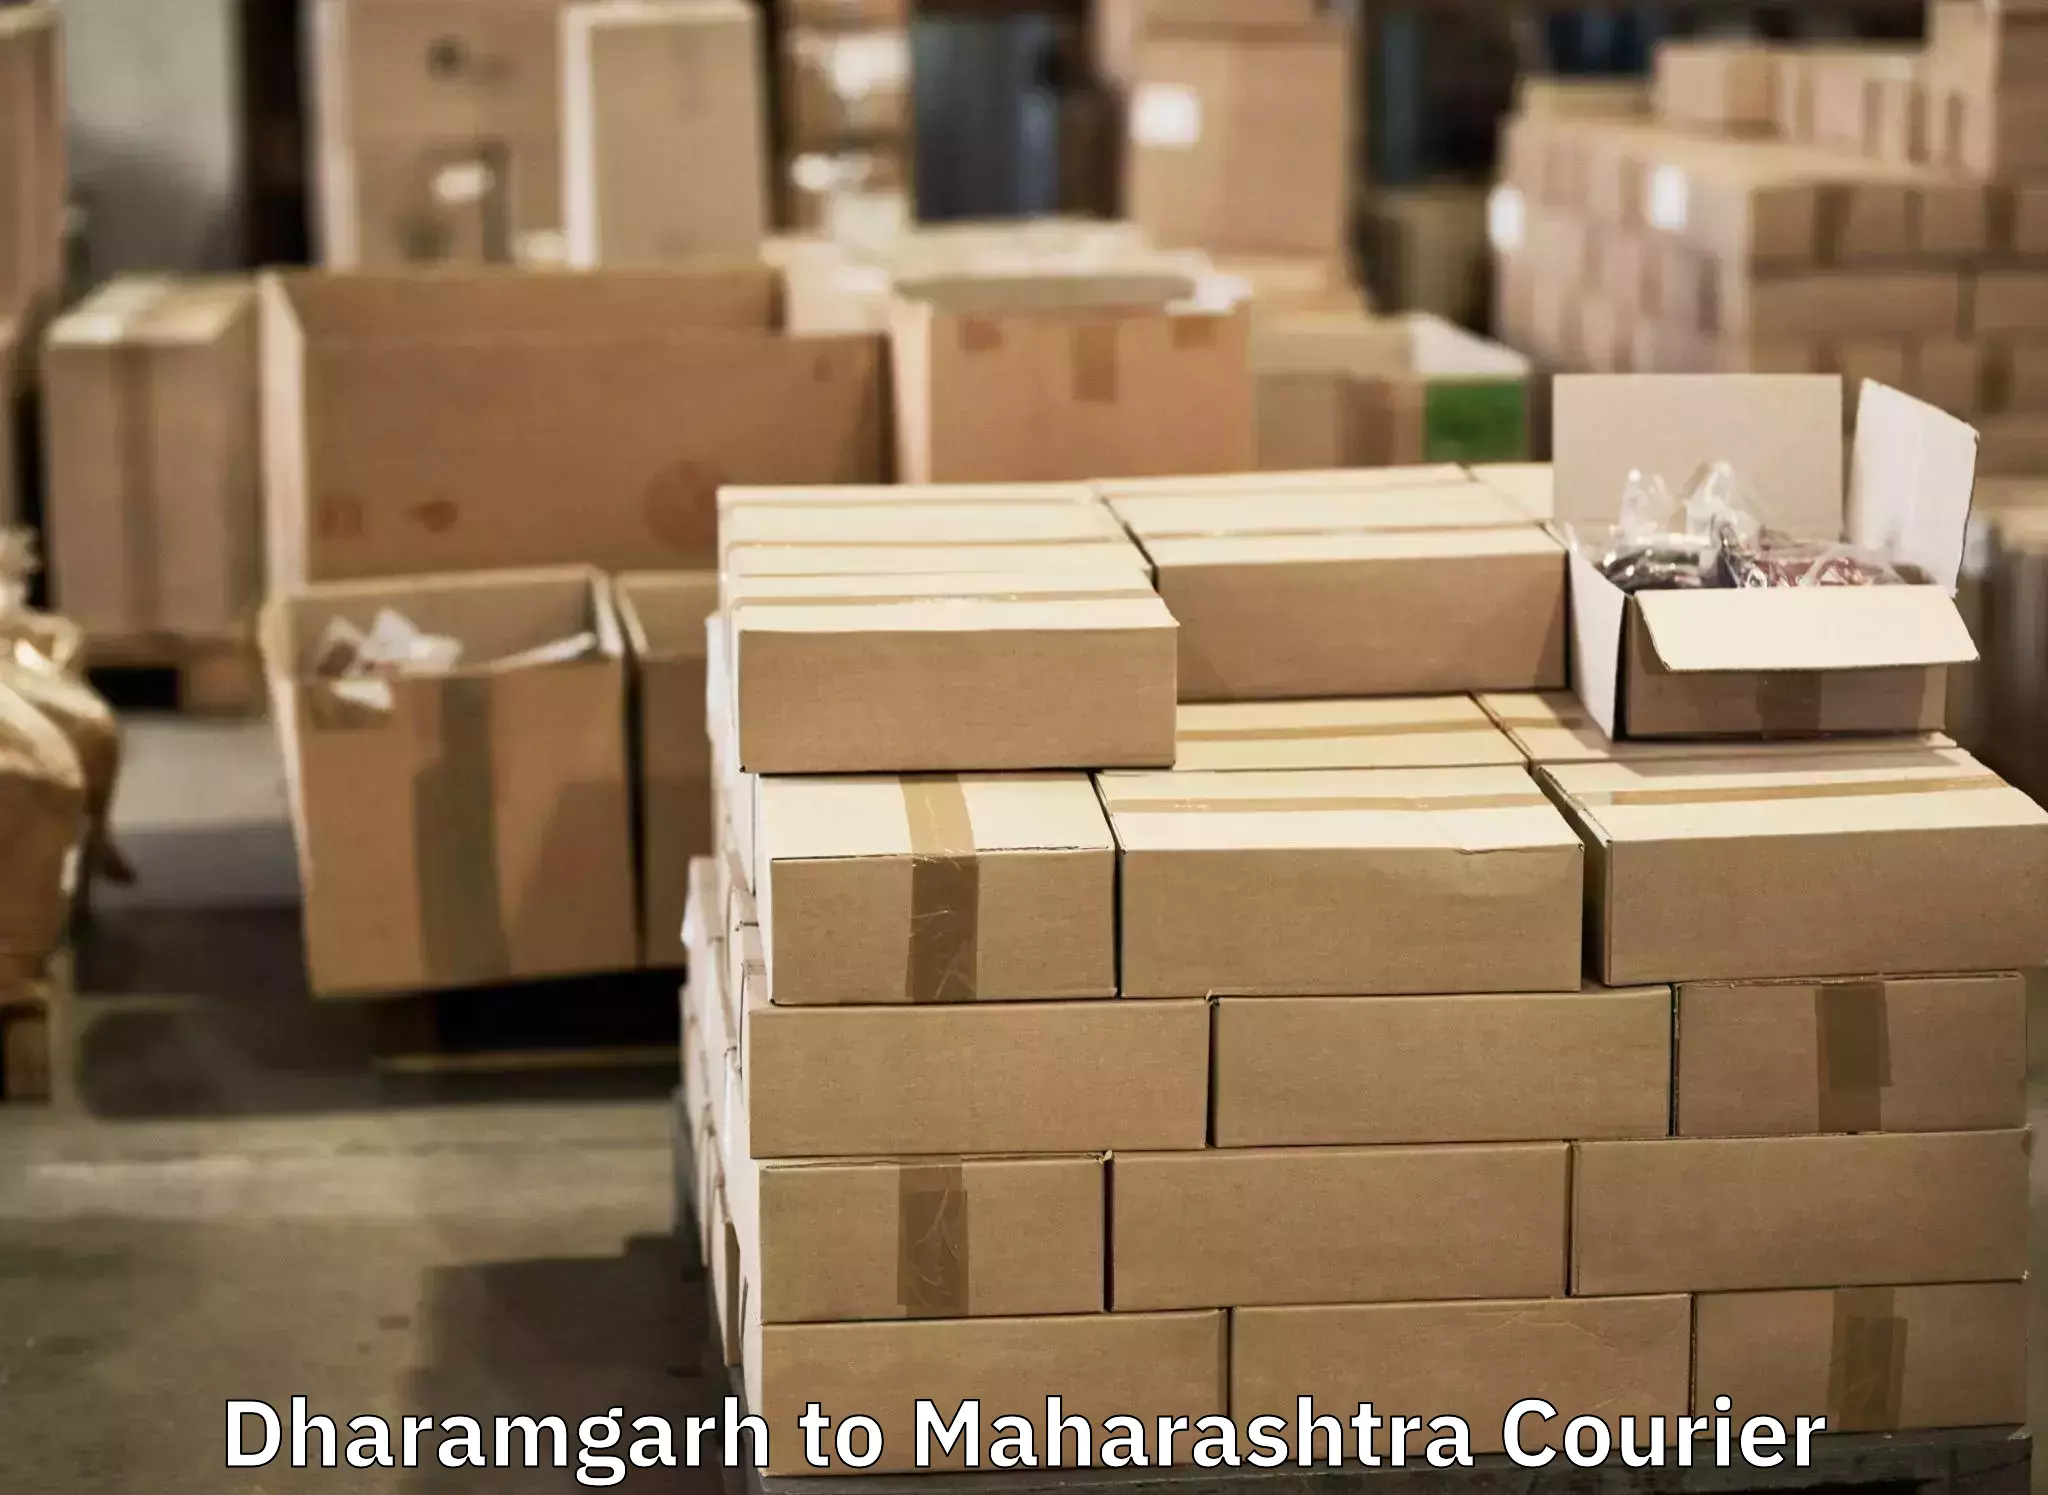 Baggage shipping service Dharamgarh to Loni Ahmednagar